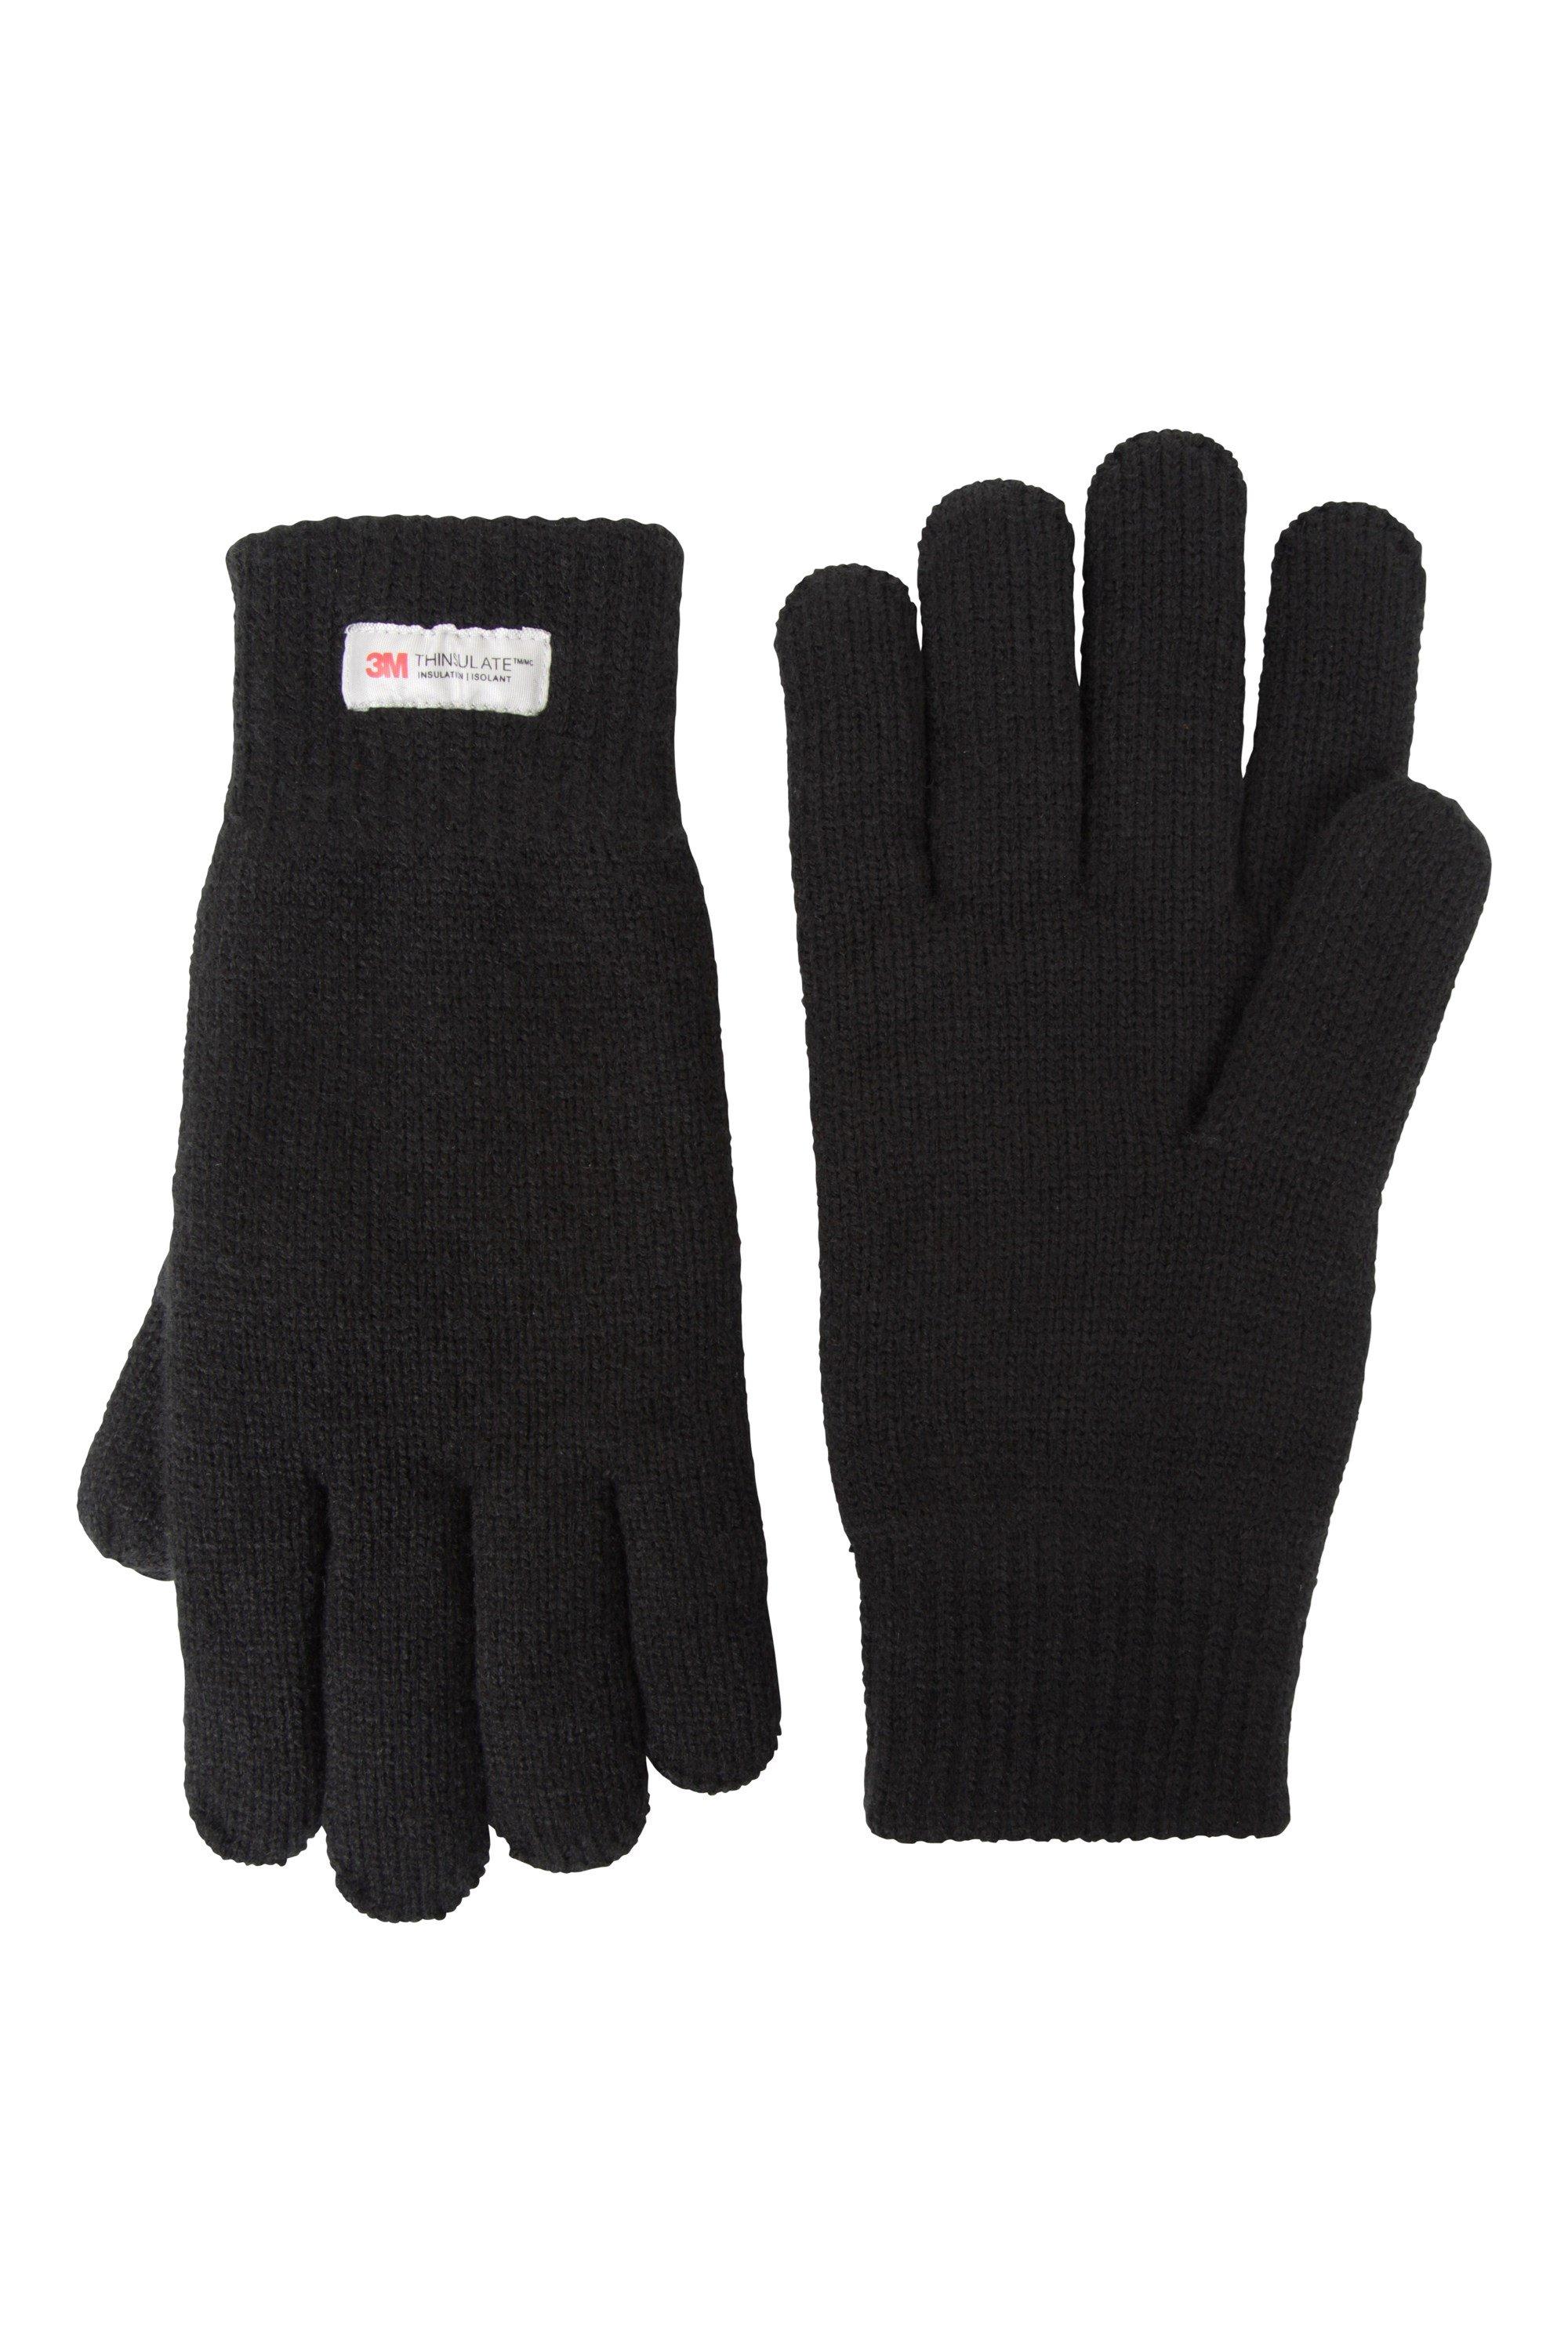 Thinsulate Gloves Трикотажные зимние теплые перчатки Mountain Warehouse, черный единорог перчатка трикотажные зимние теплые мягкие перчатки mountain warehouse фиолетовый